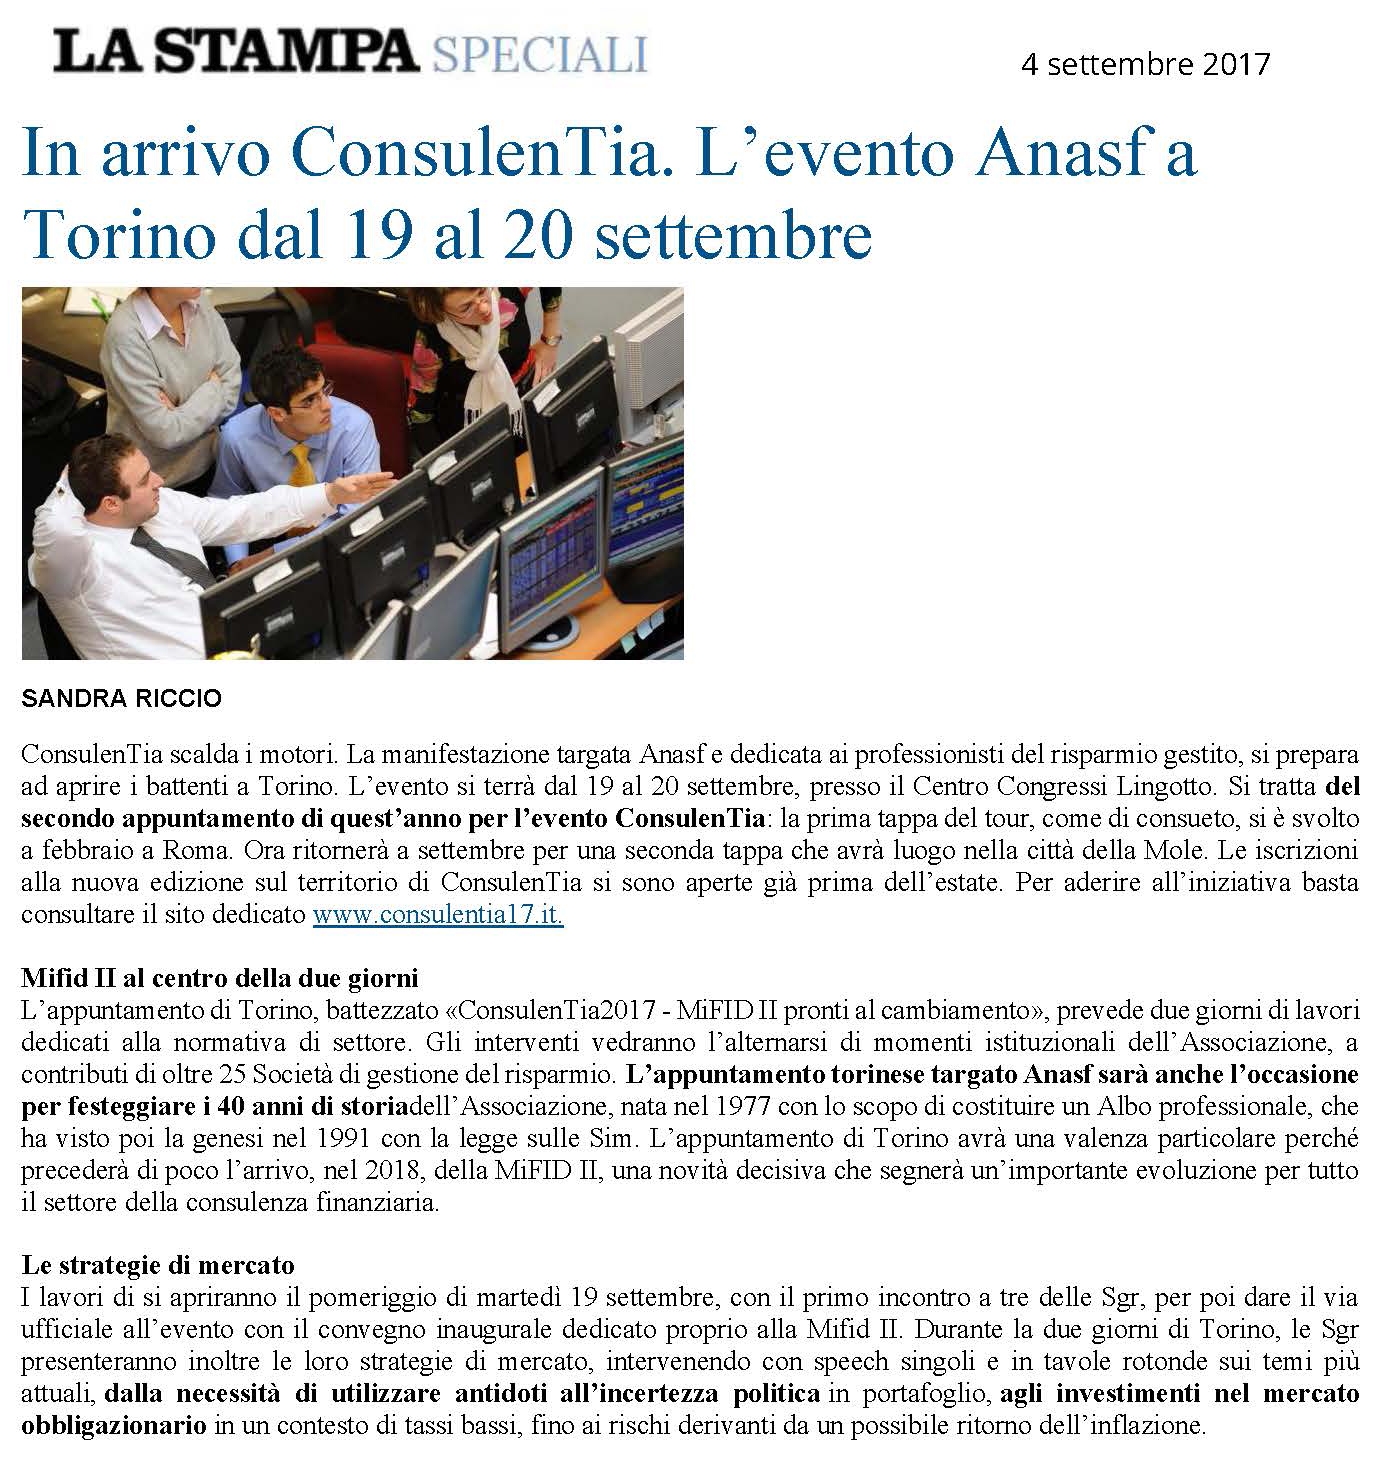 In arrivo ConsulenTia. L'evento Anasf a Torino dal 19 al 20 settembre